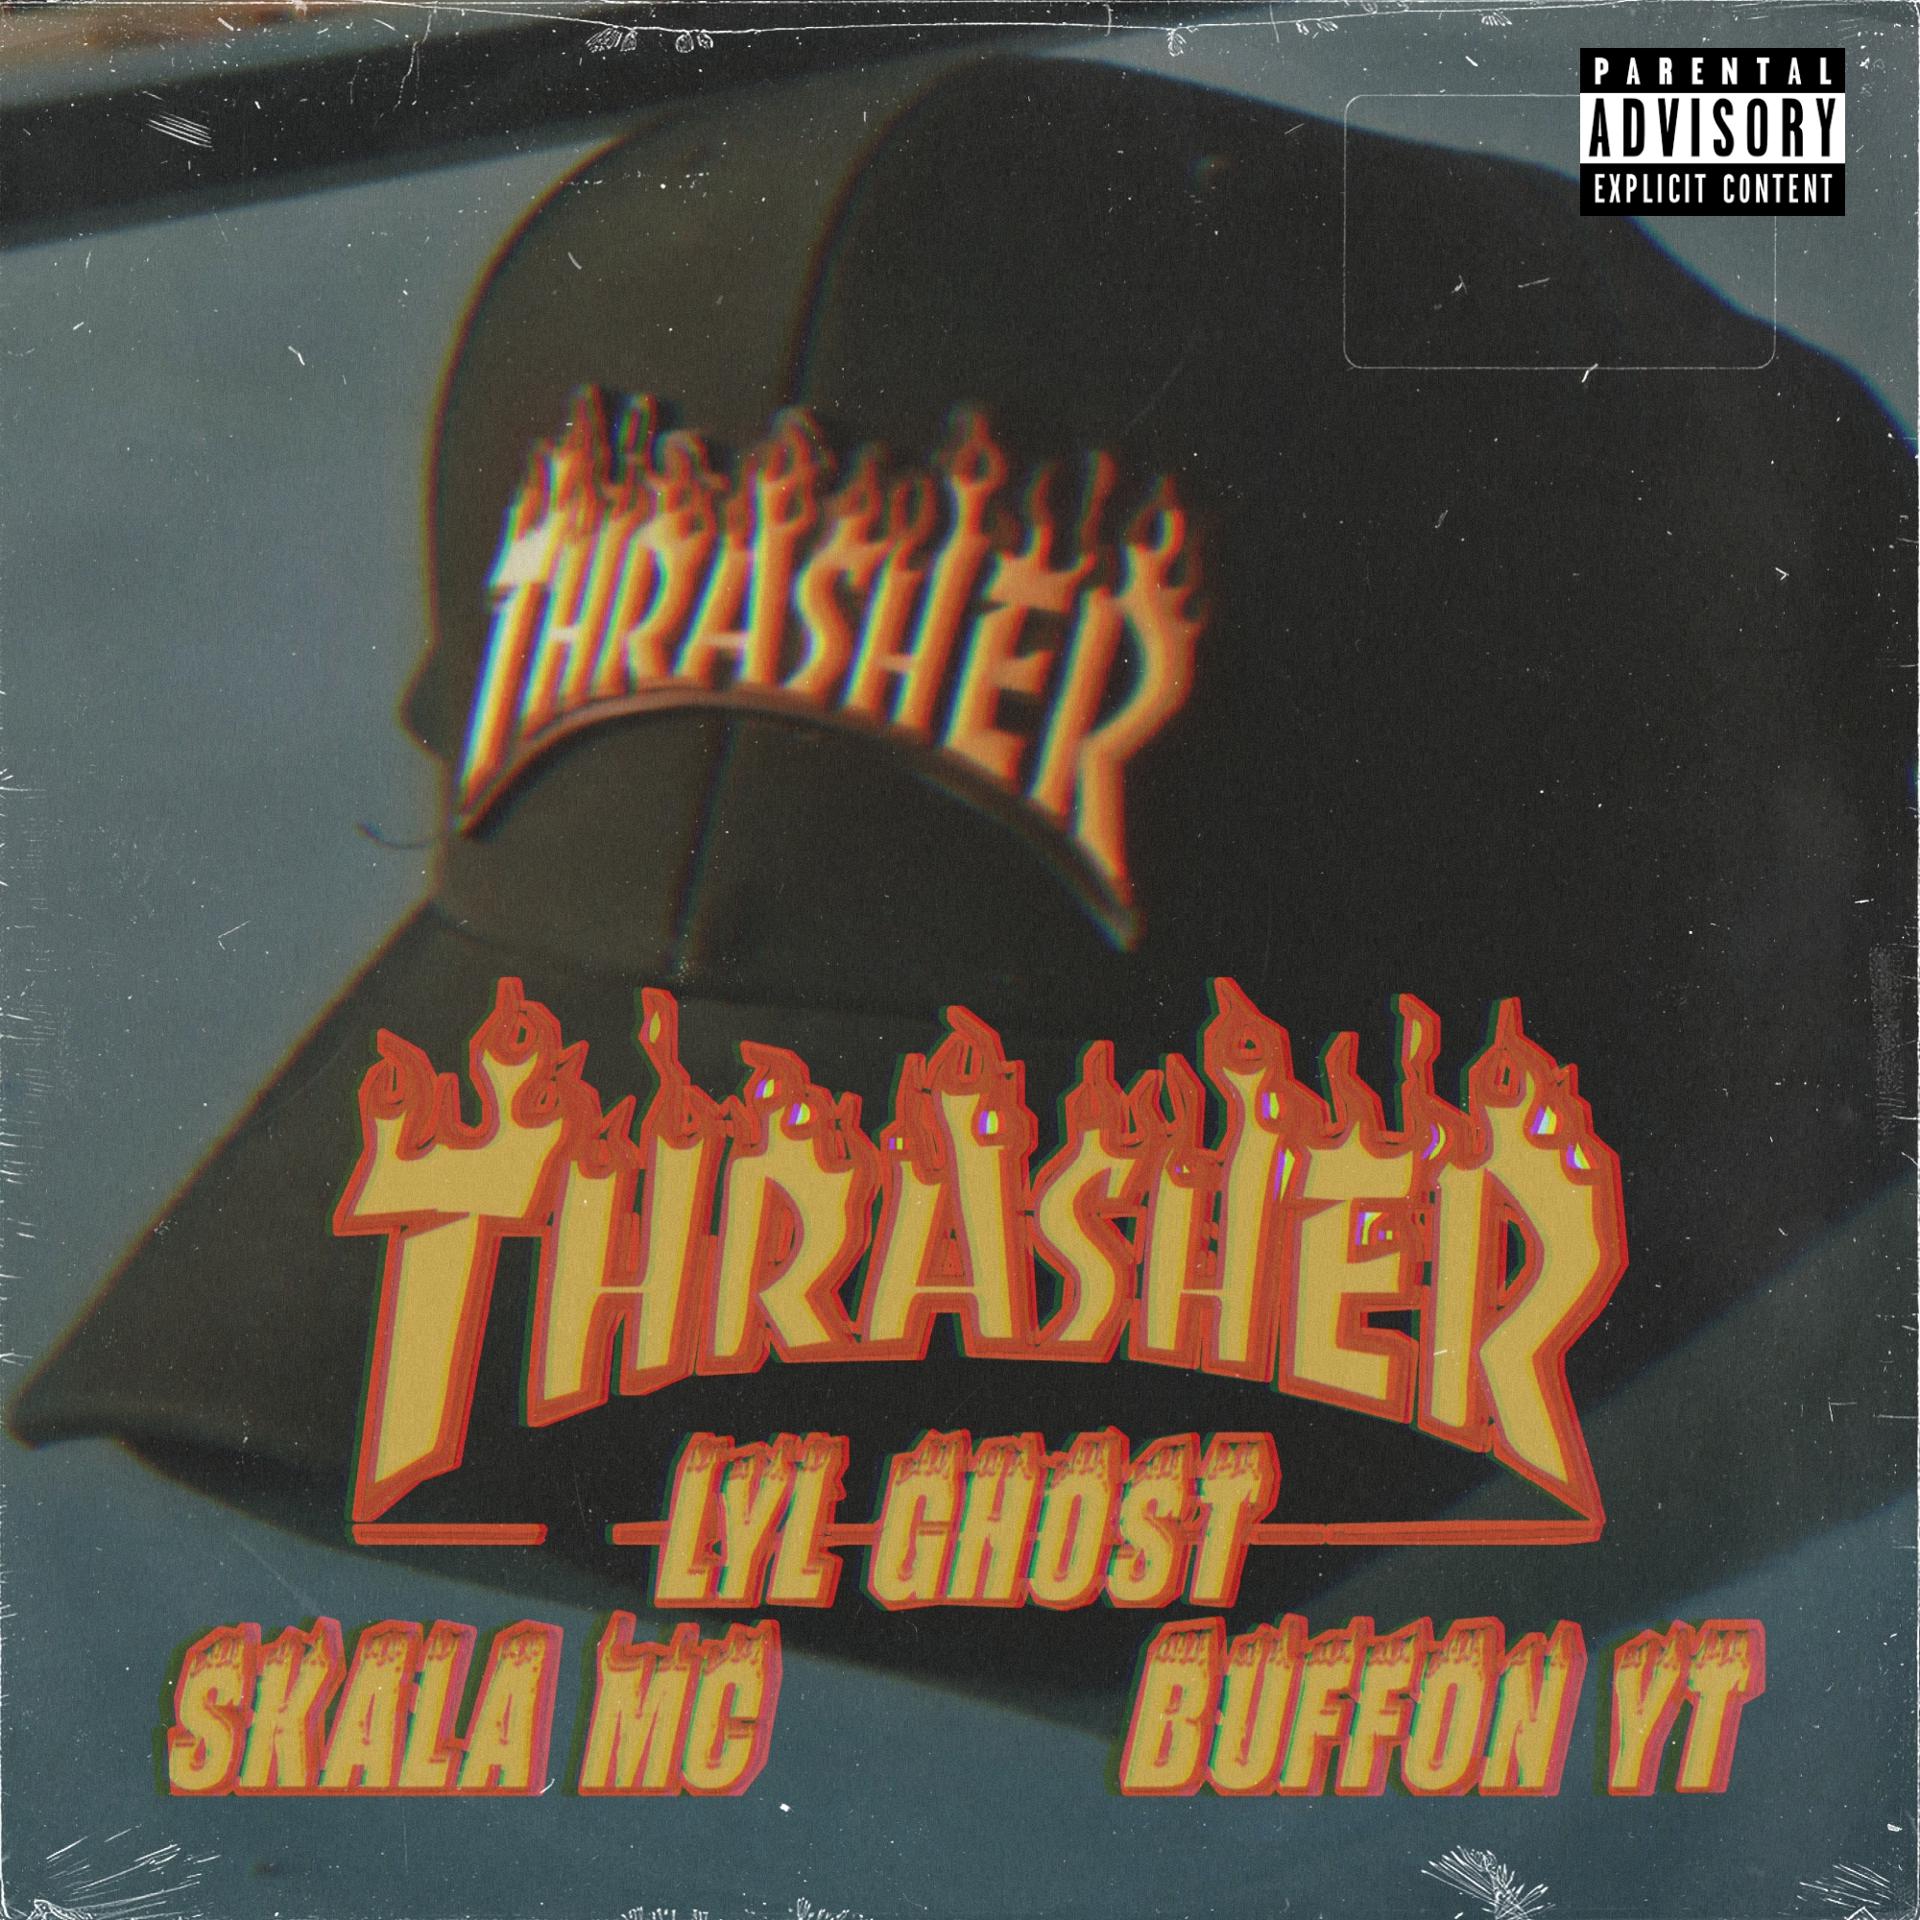 Постер альбома Thrasher (feat. Lyl Ghost, Buffon Y.t, Skala MC)